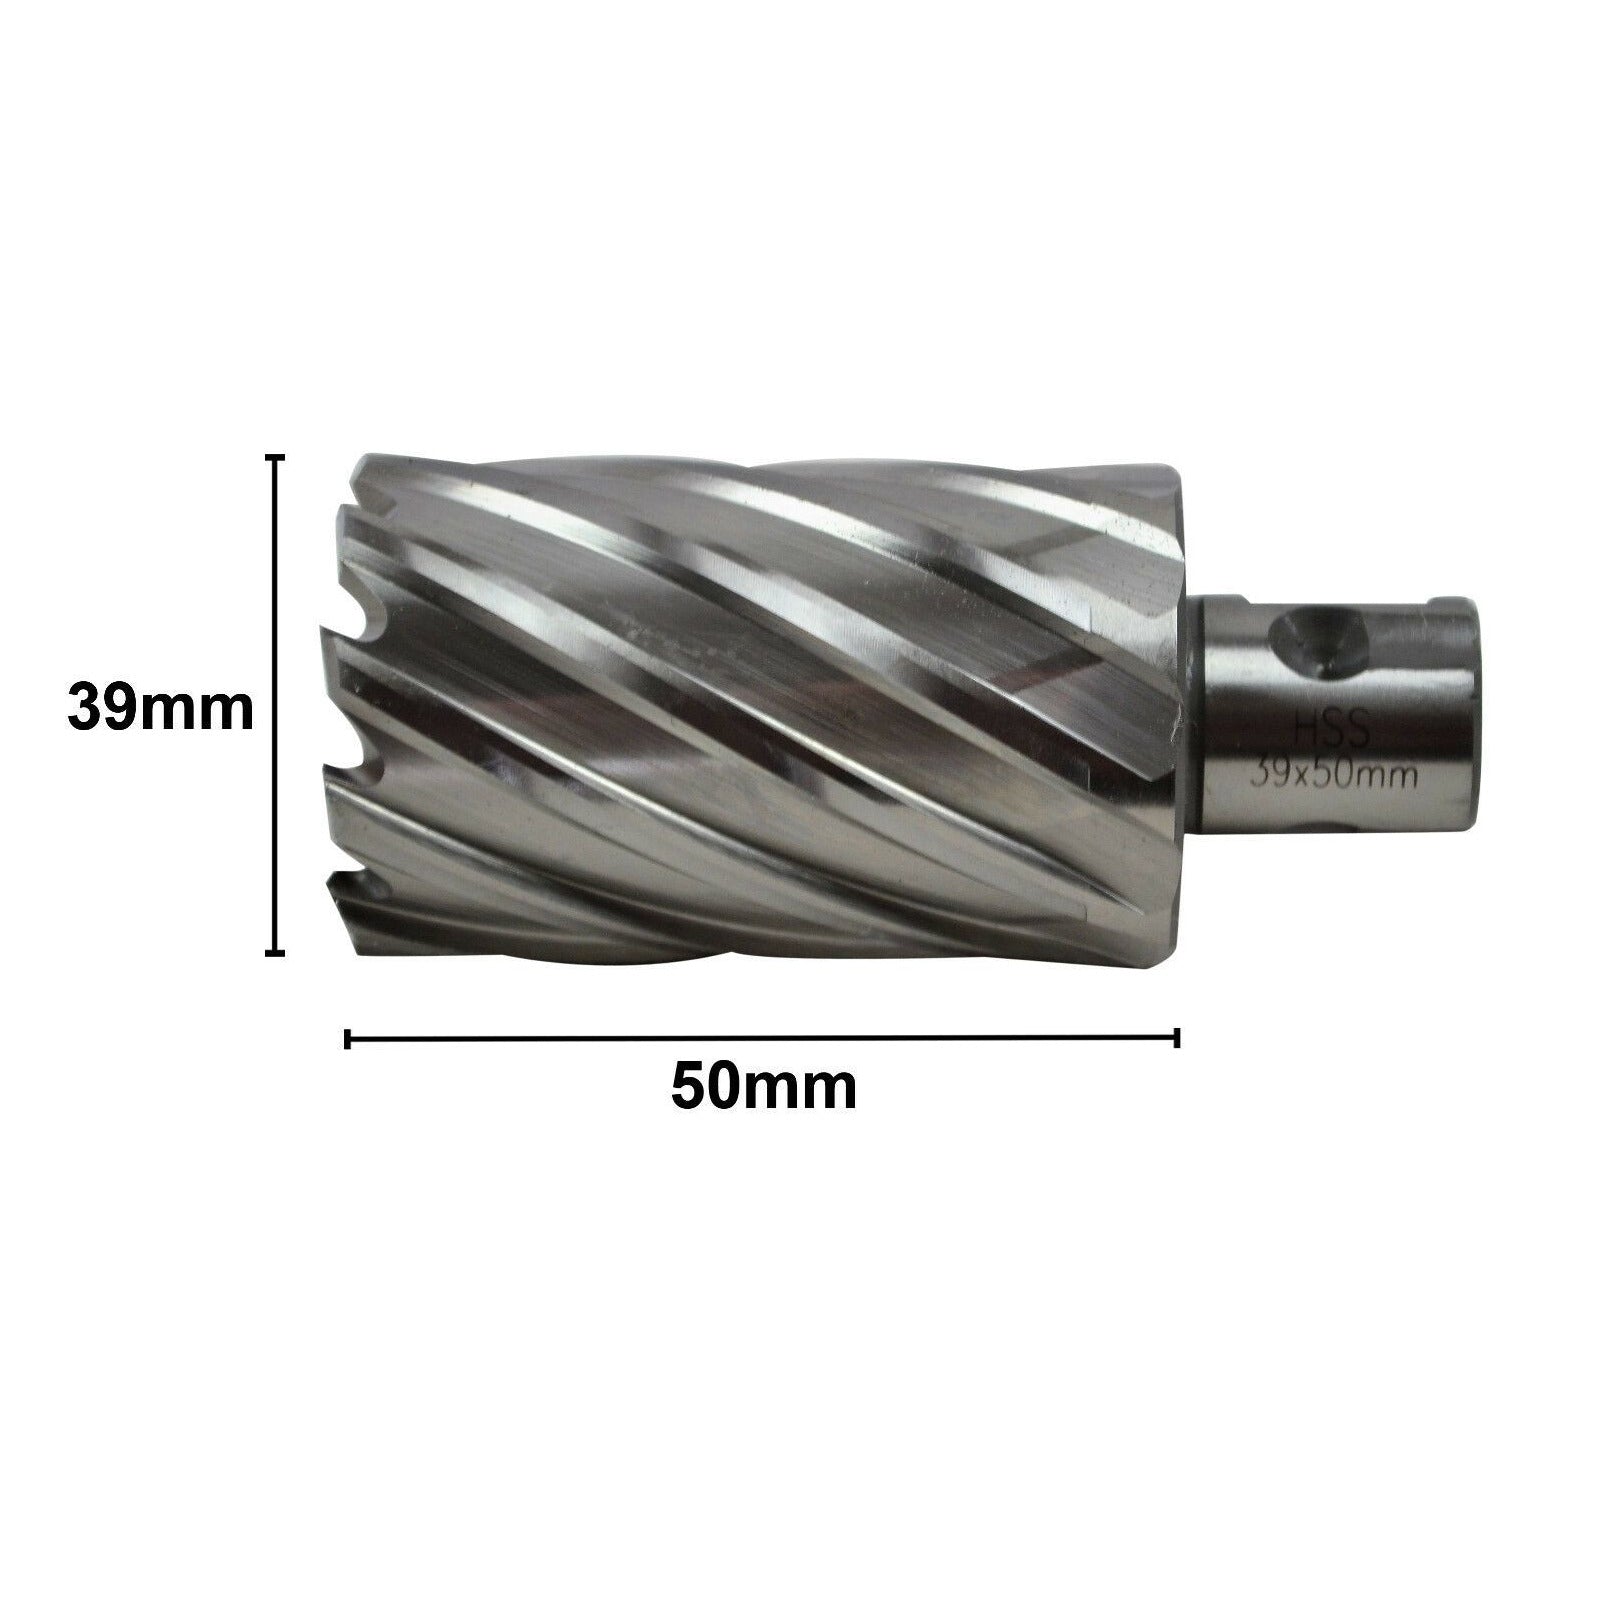 annular cutter broach cutter HSS universal shank cut cnc metalwork industrail 39mmx50mm and 41mmx50mm 